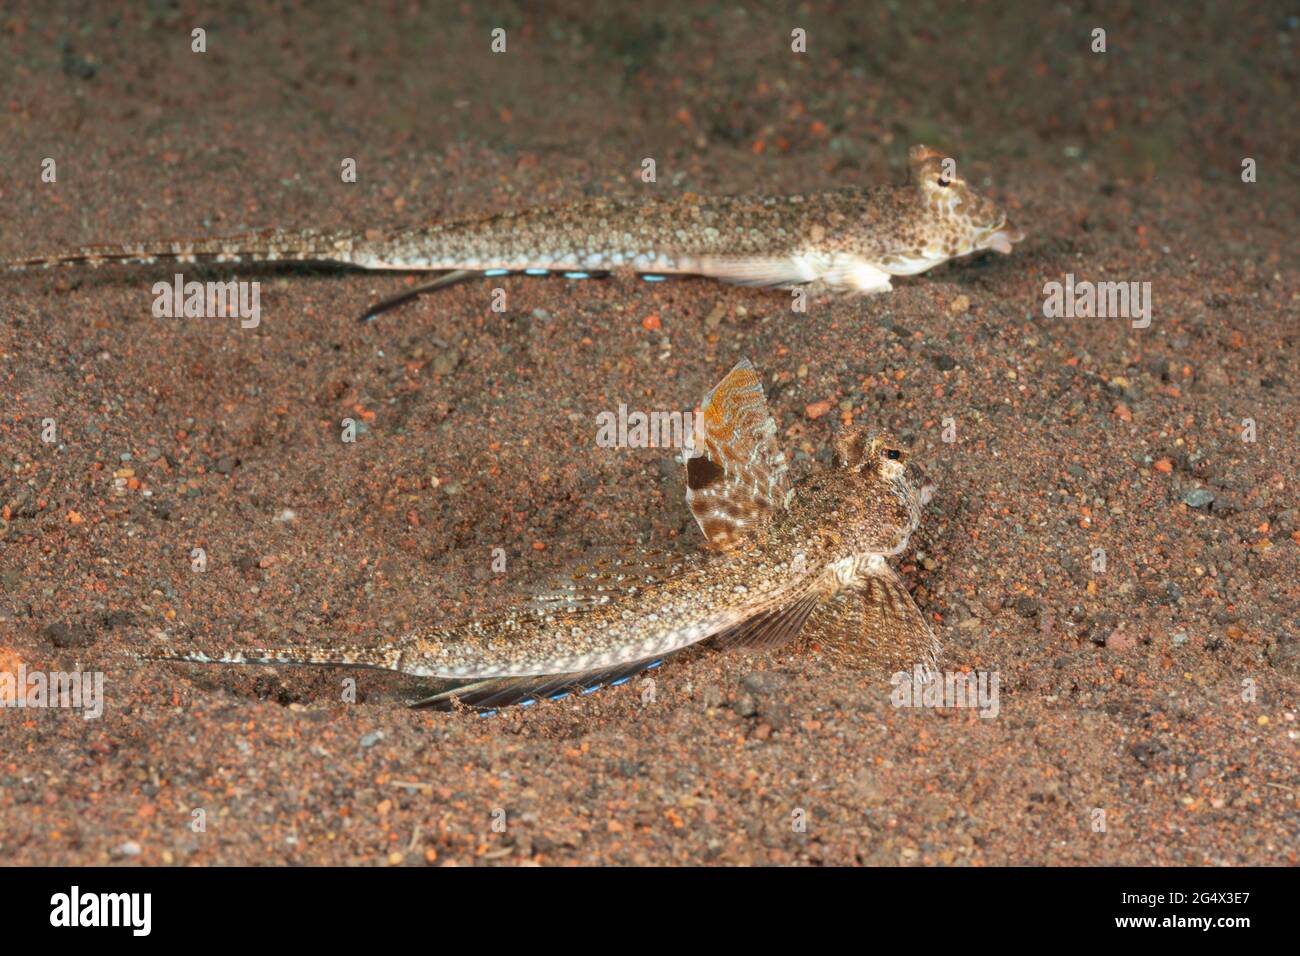 Une paire de dragons à longue queue, Calliurichthys neptunius, avec les mâles nageoire dorsale en relief. Ces derniers sont parfois appelés les dragons de neptune. Banque D'Images